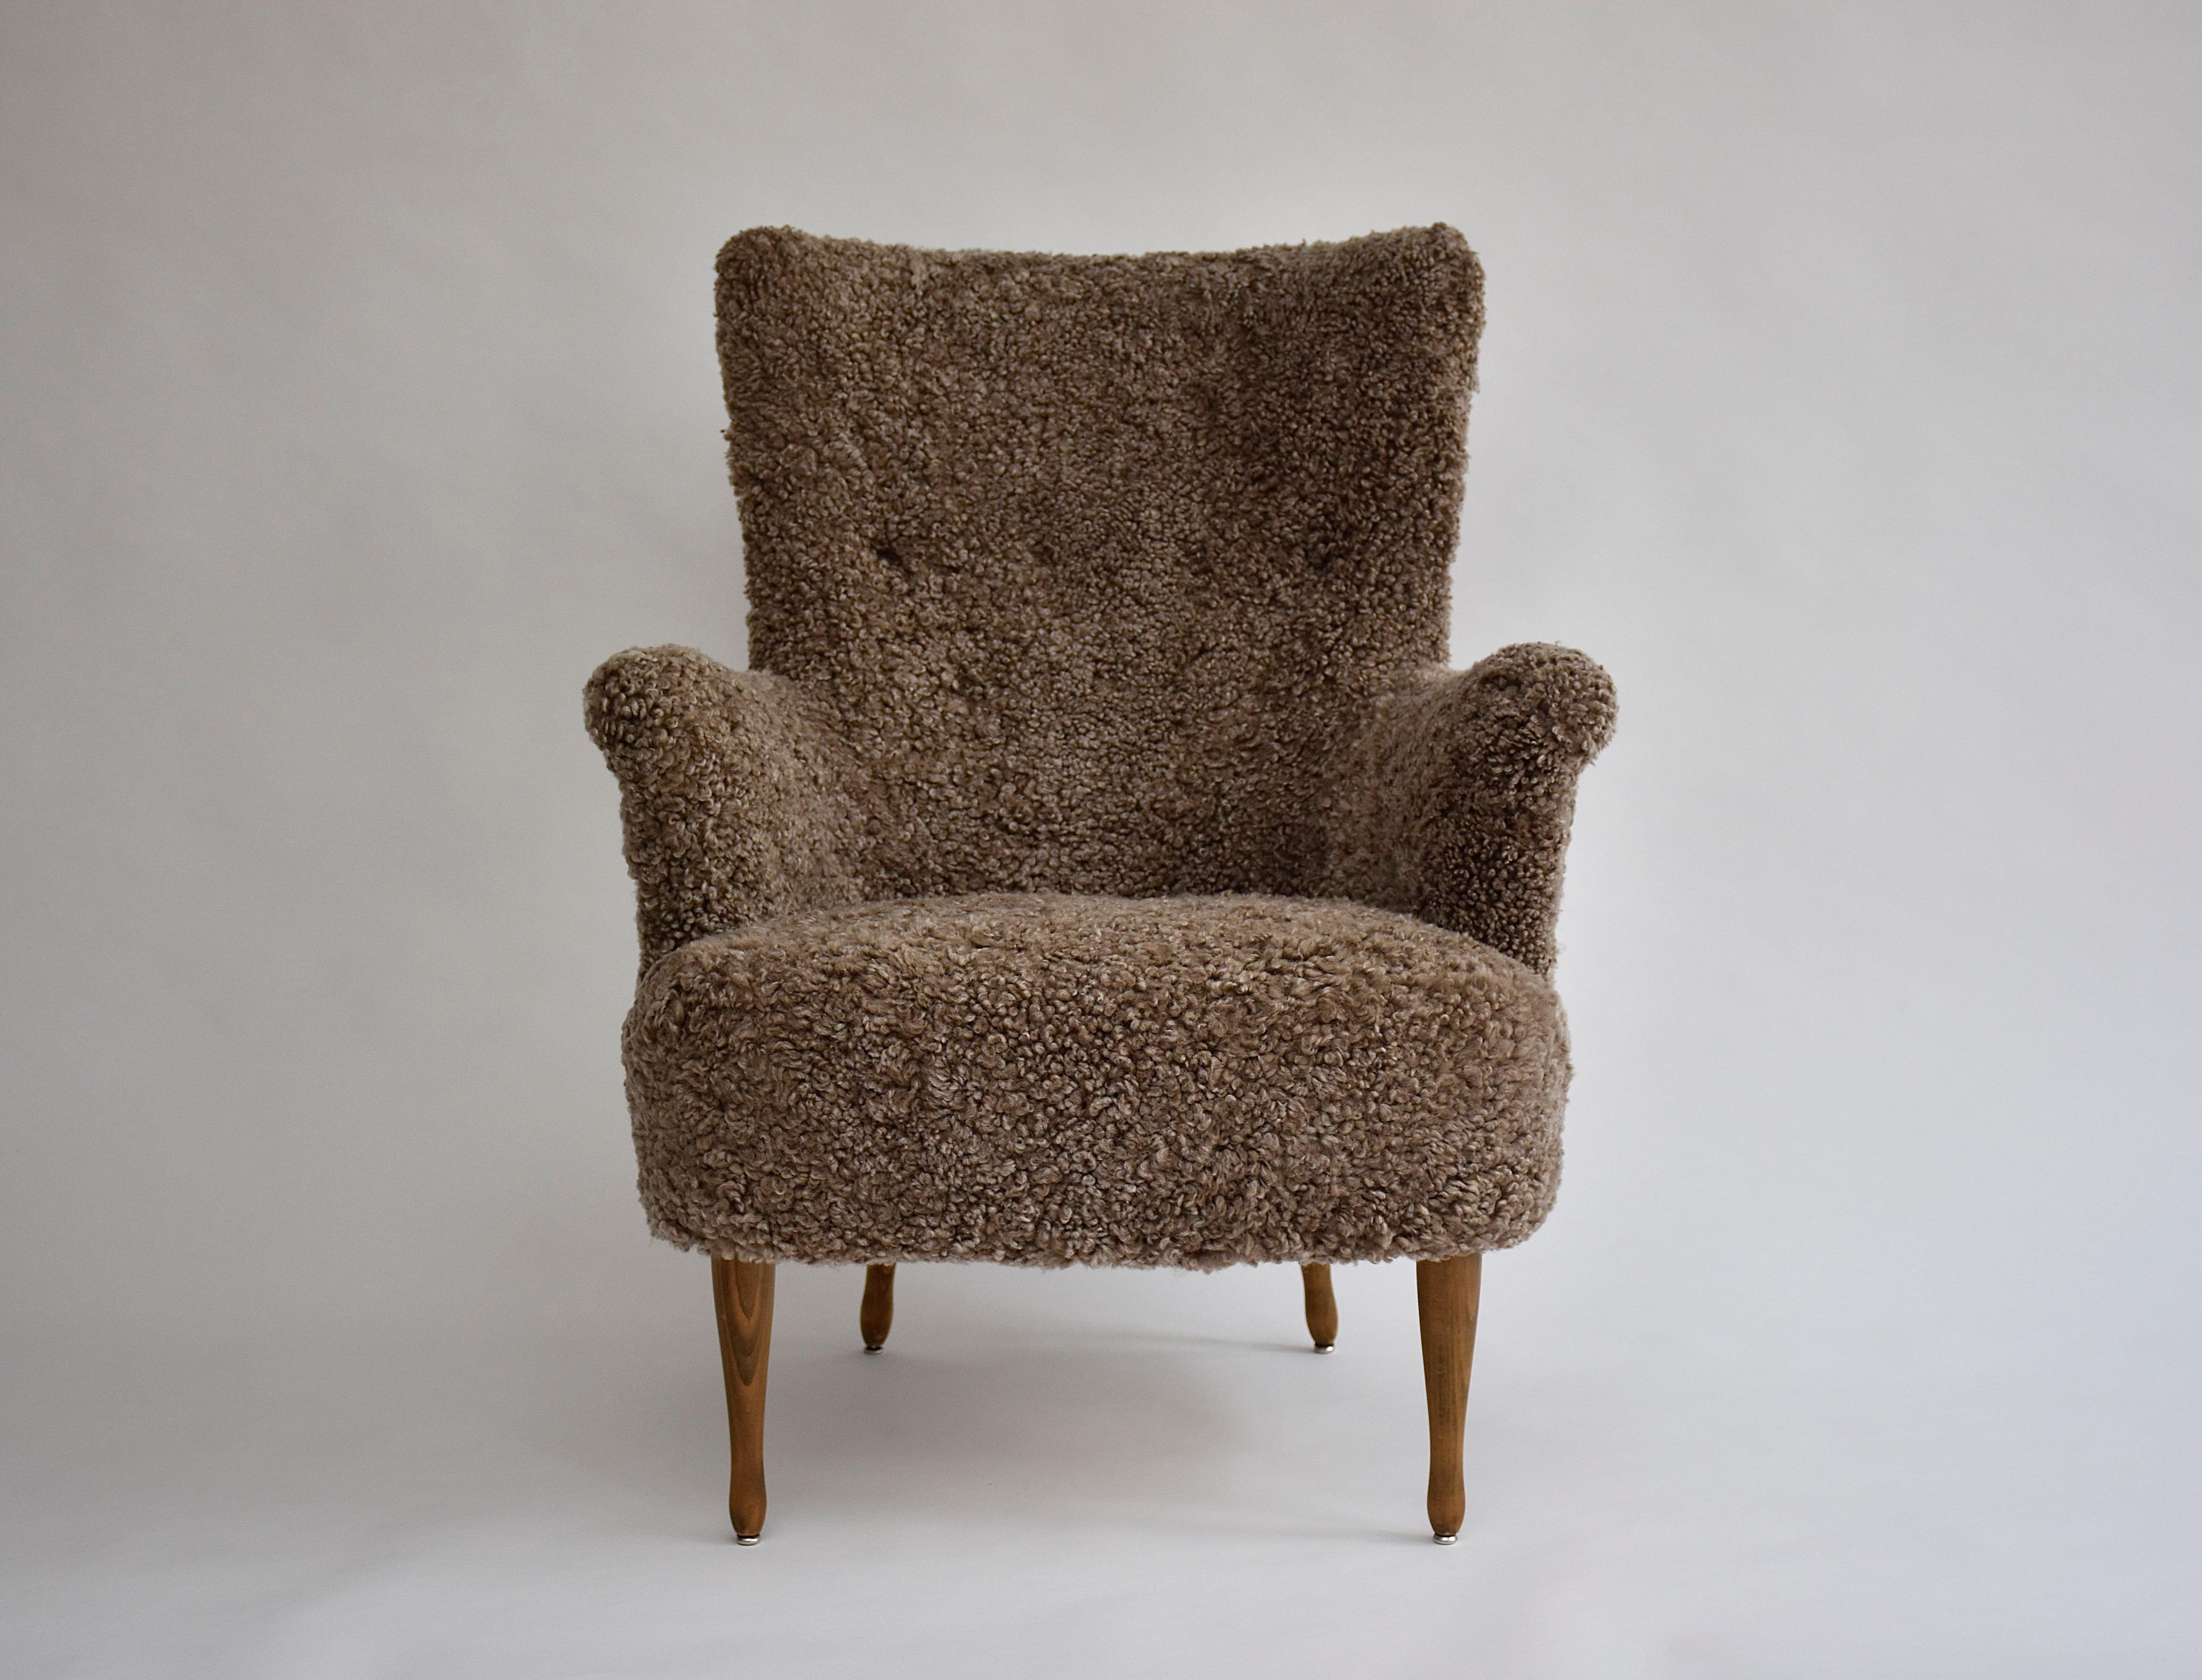 Un superbe fauteuil du célèbre designer de meubles Carl Malmsten.
Cette chaise emblématique offre un grand confort et une qualité durable. 
Dossier touffeté par des boutons, courbes élégantes des bras et pieds en bois. 
Nouvelle sellerie souple en